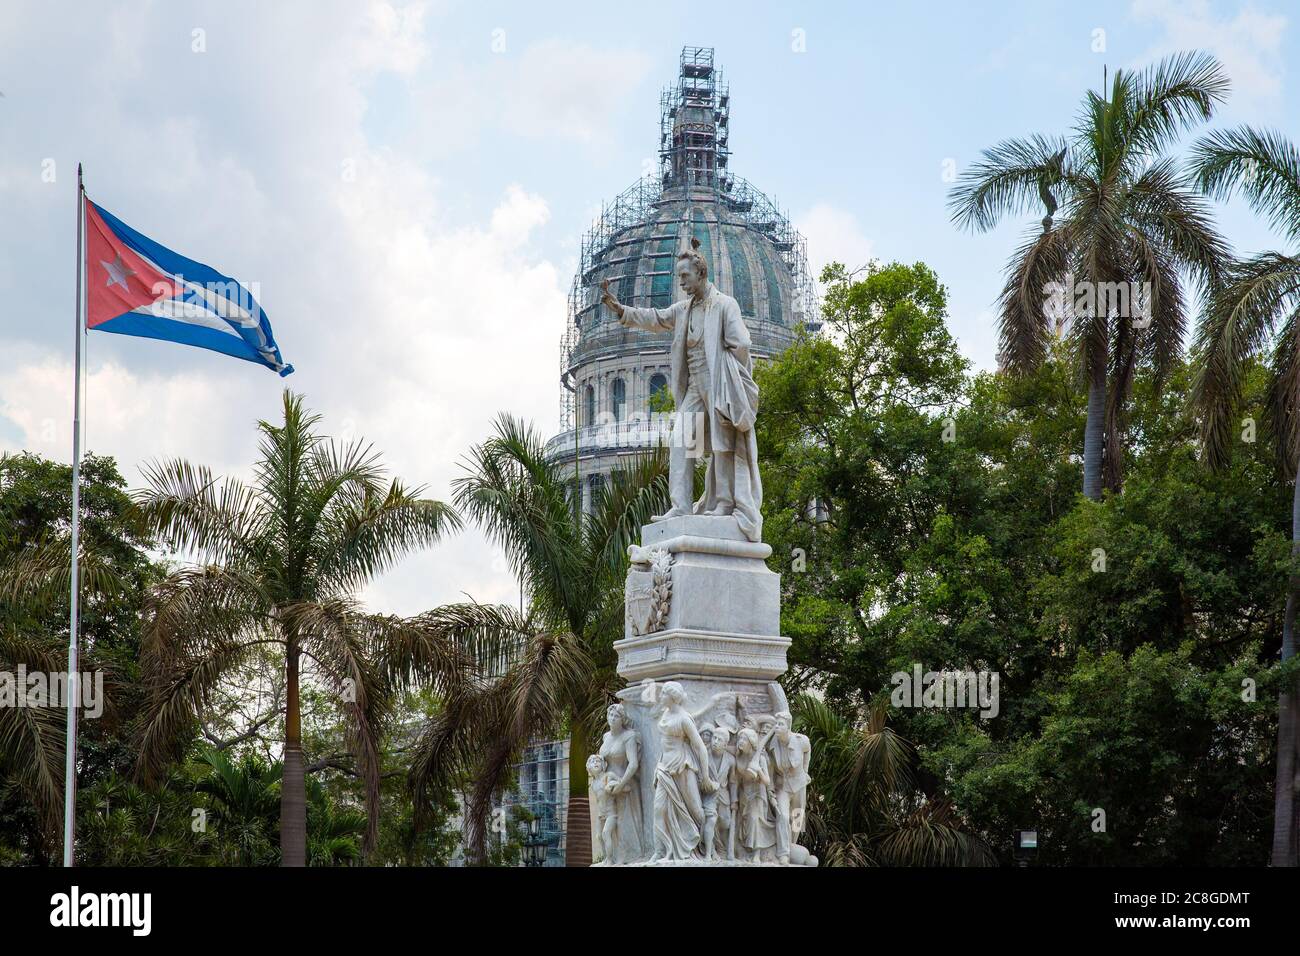 L'Avana / Cuba - 04.15.2015: La statua in marmo bianco del famoso poeta Jose Marti di fronte alla bandiera nazionale di Cuba, uccelli sulla sua mano e la testa. Dietro Foto Stock